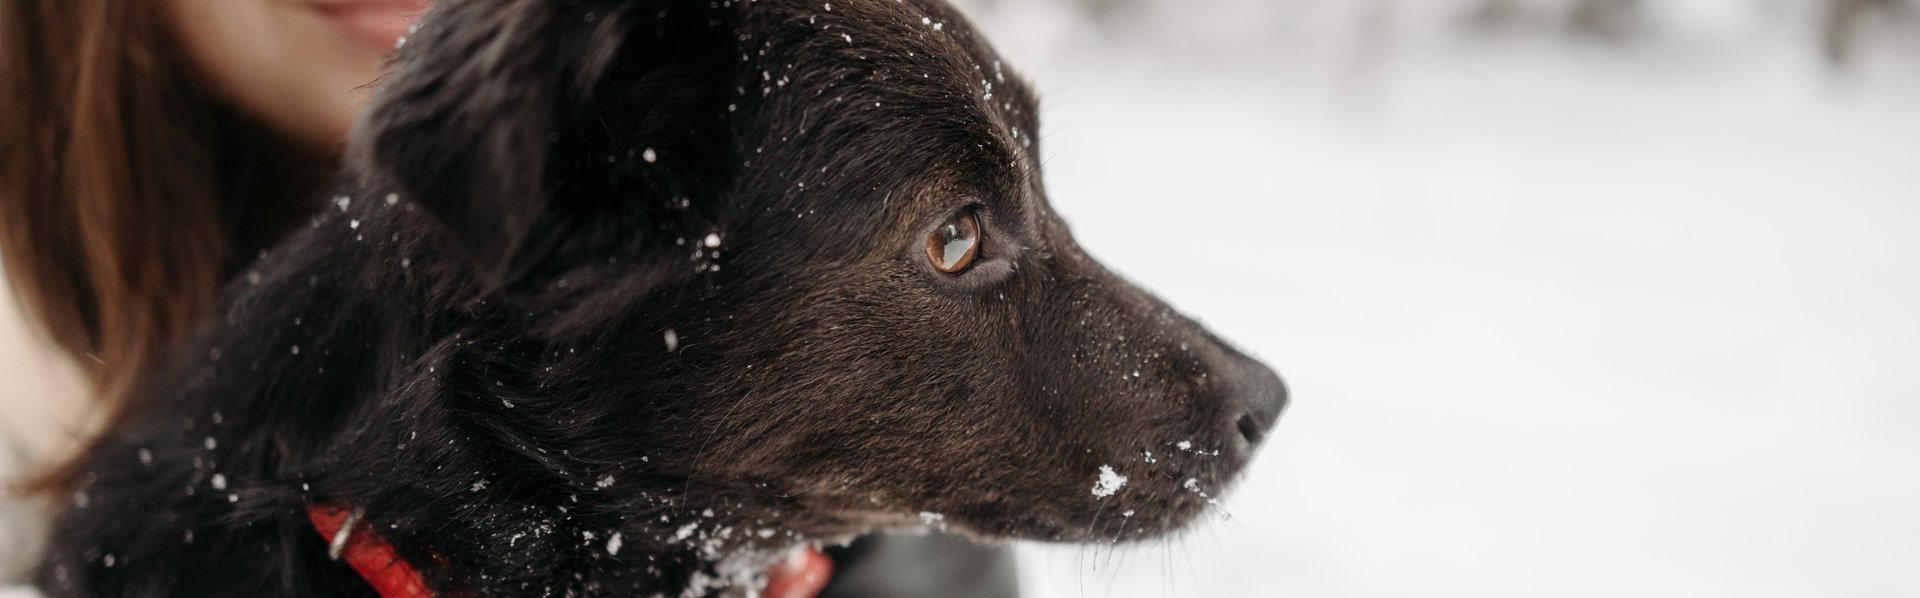 Hund im Winter im Freien